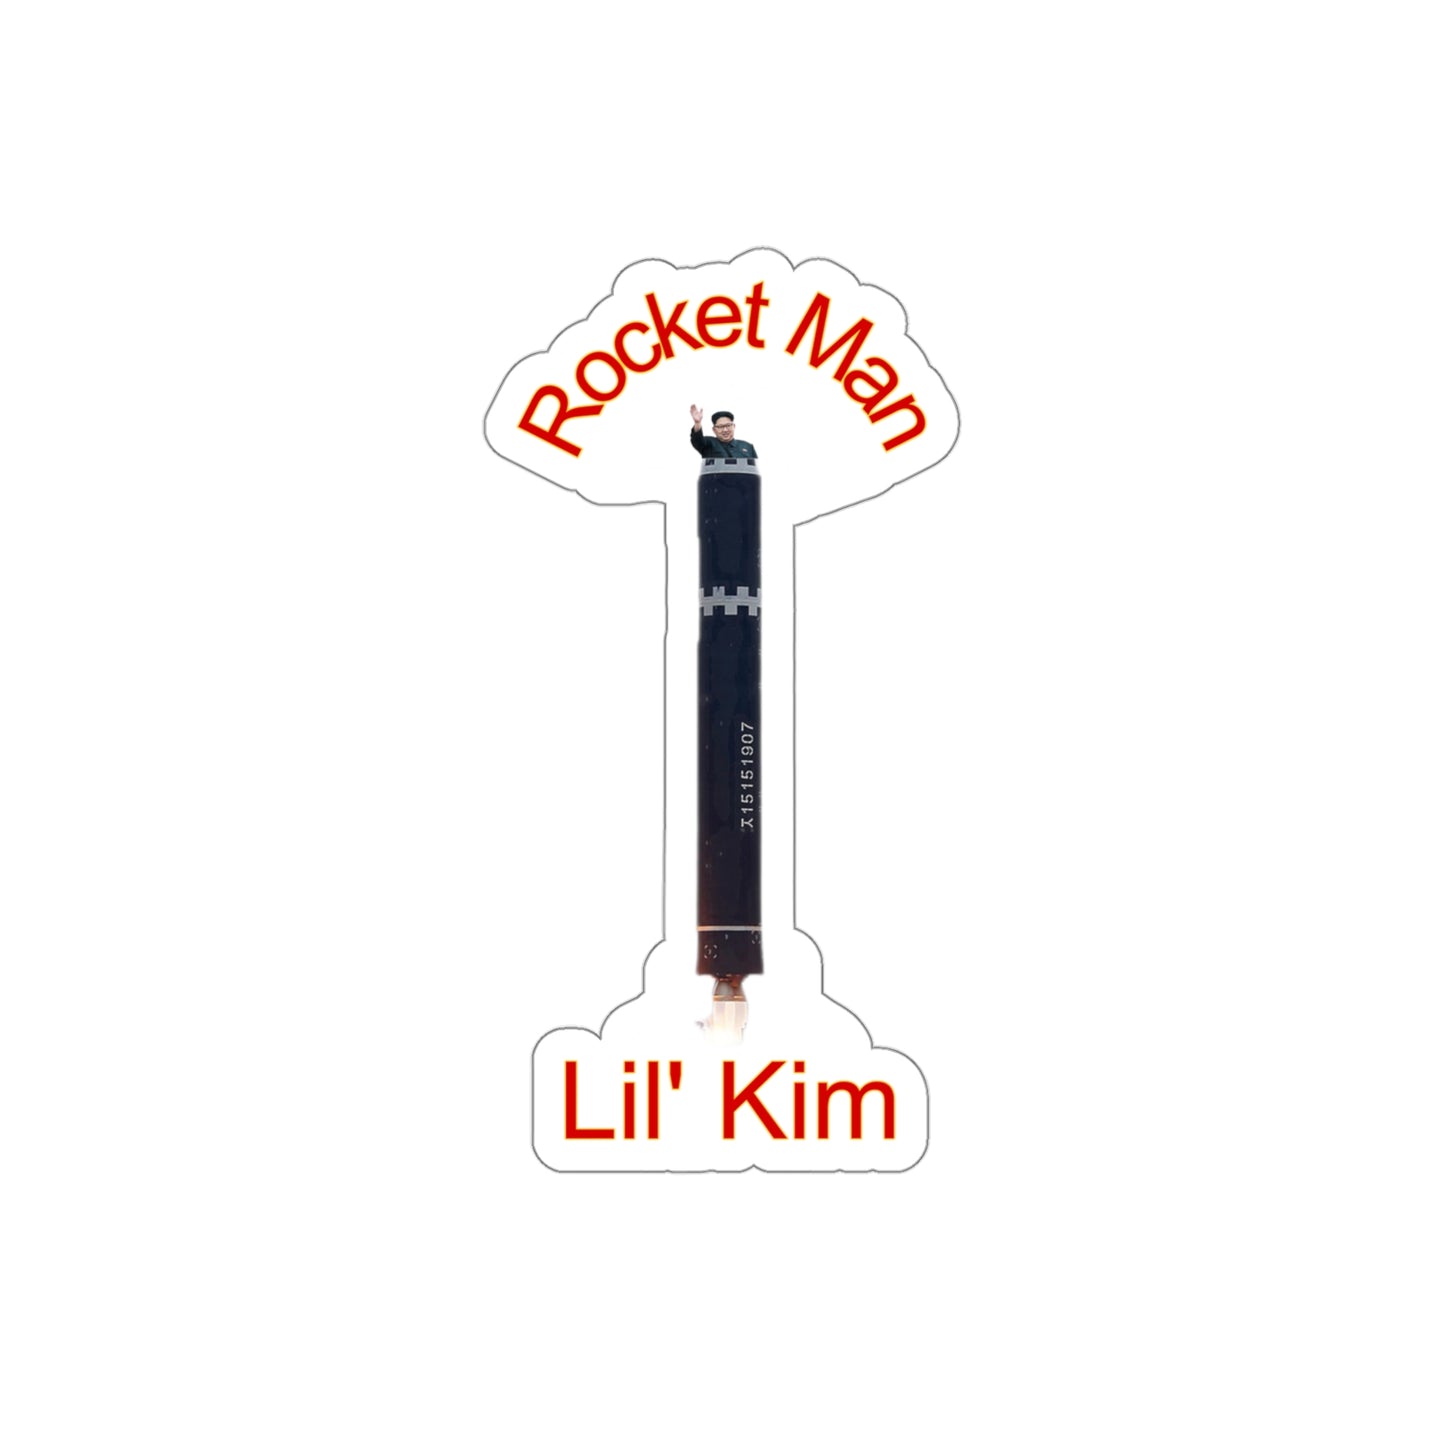 Rocket man, Lil' Kim